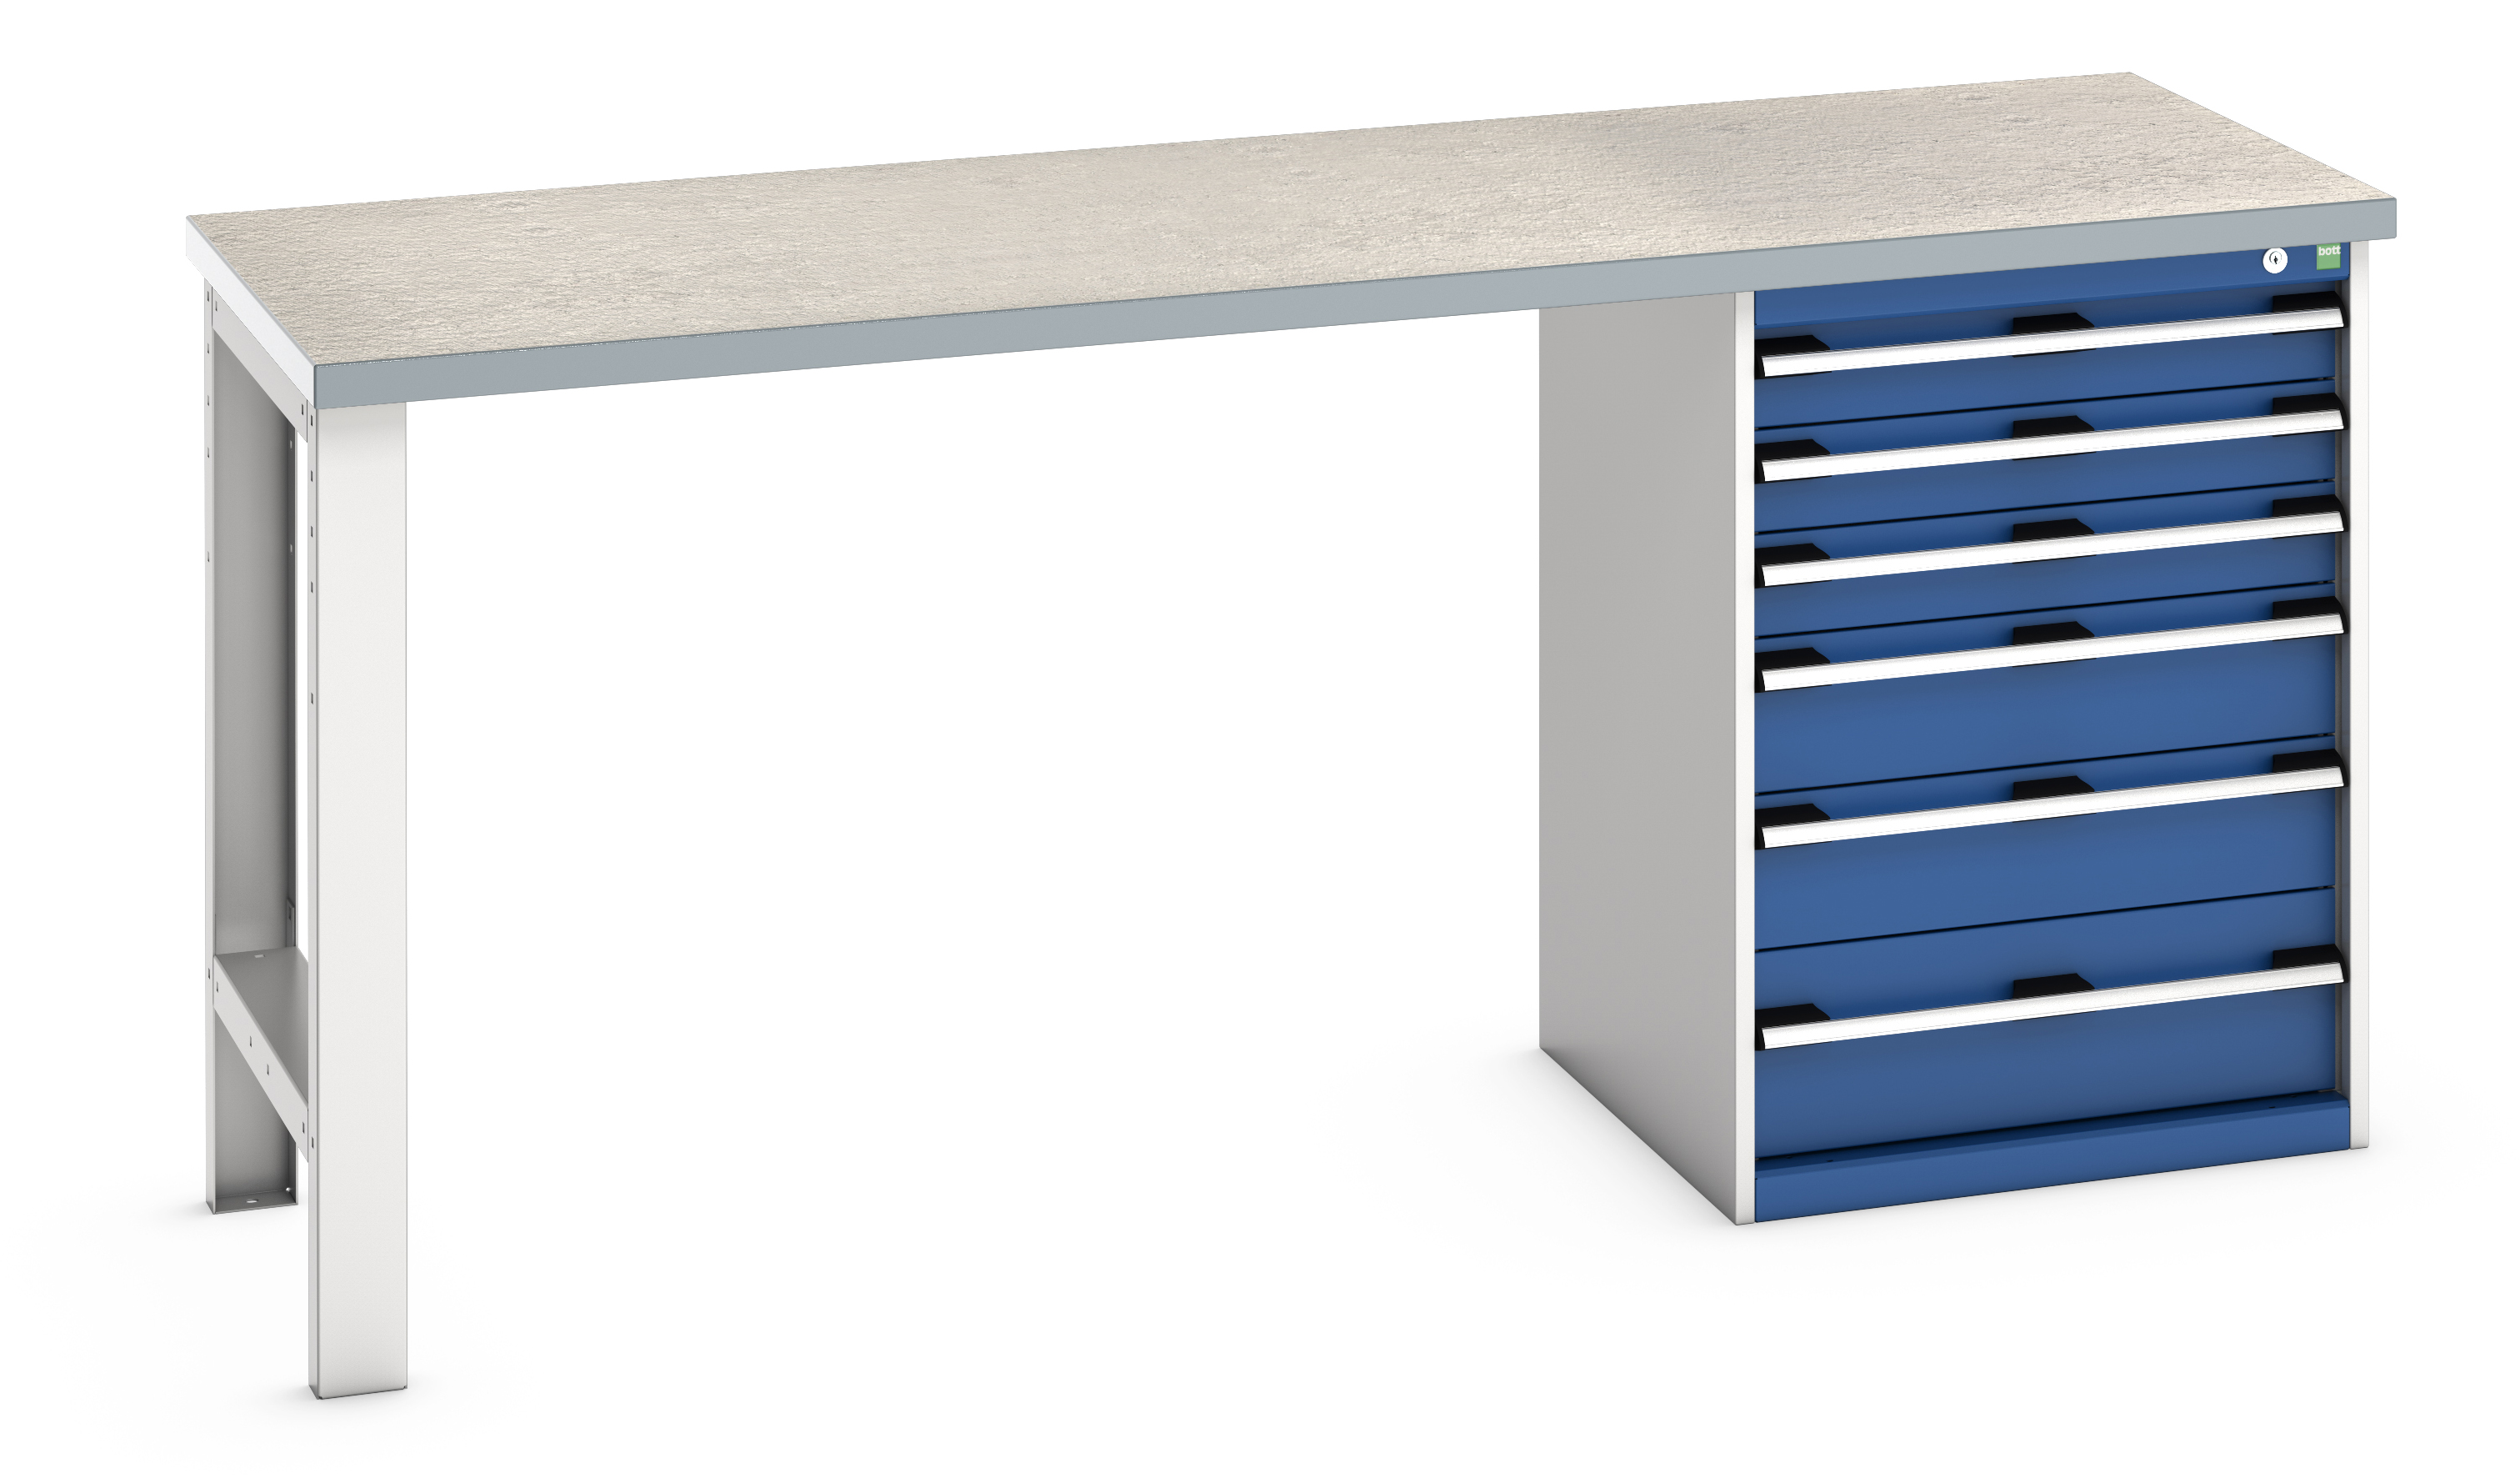 Bott Cubio Pedestal Bench With 6 Drawer Cabinet - 41003495.11V